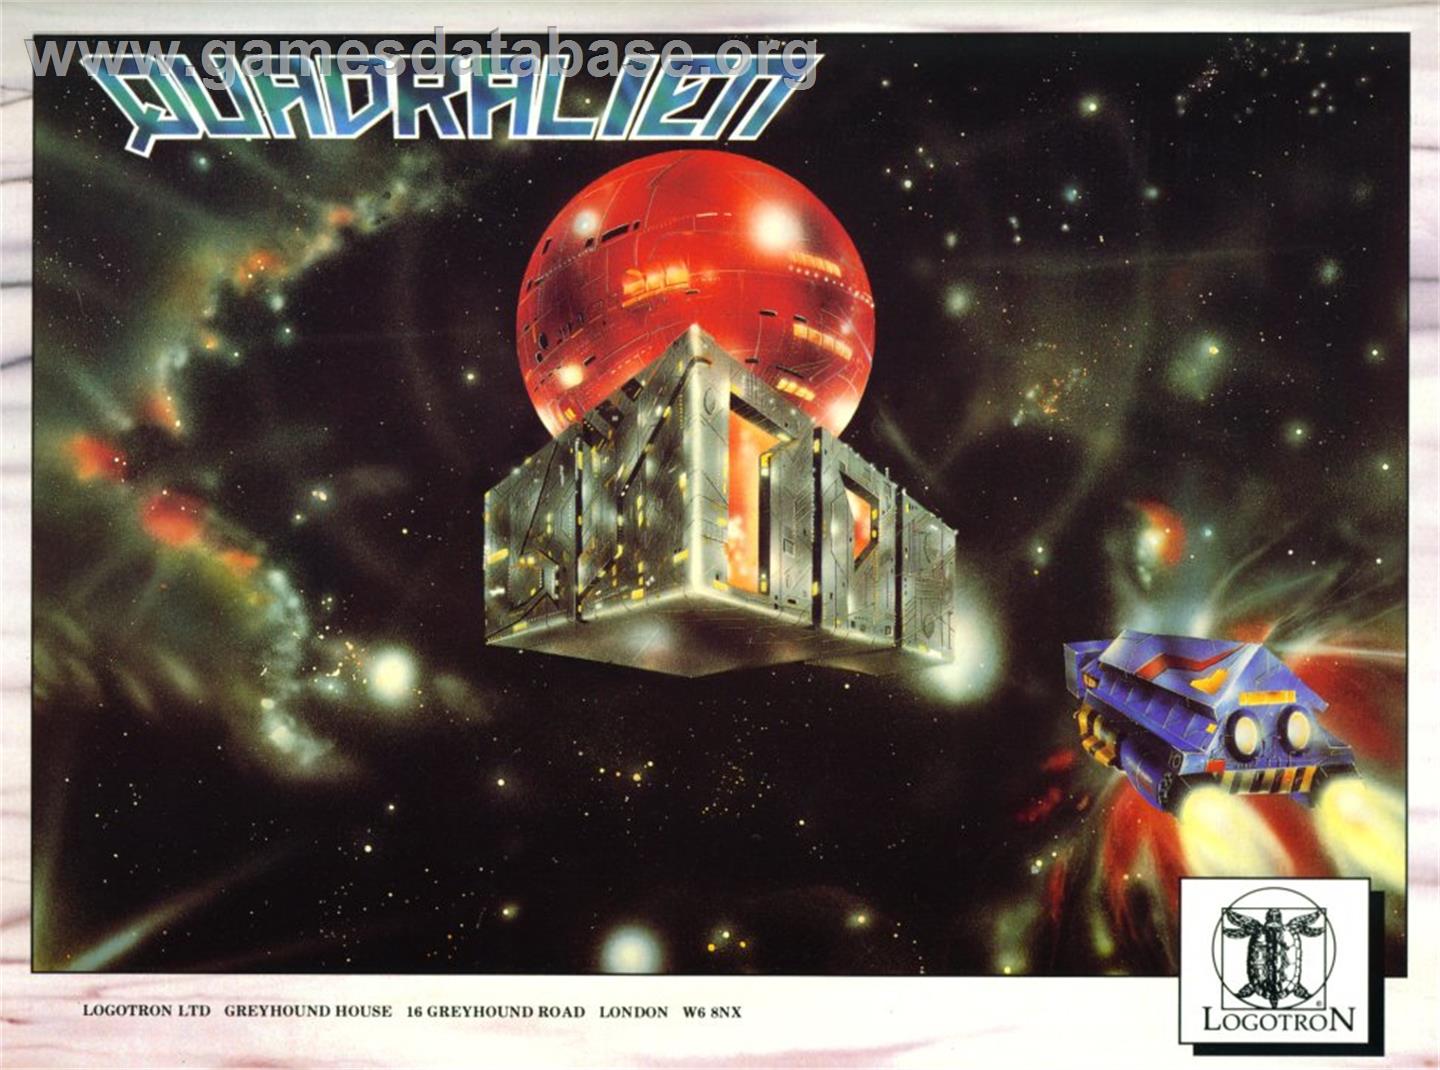 Quadralien - Commodore Amiga - Artwork - Advert